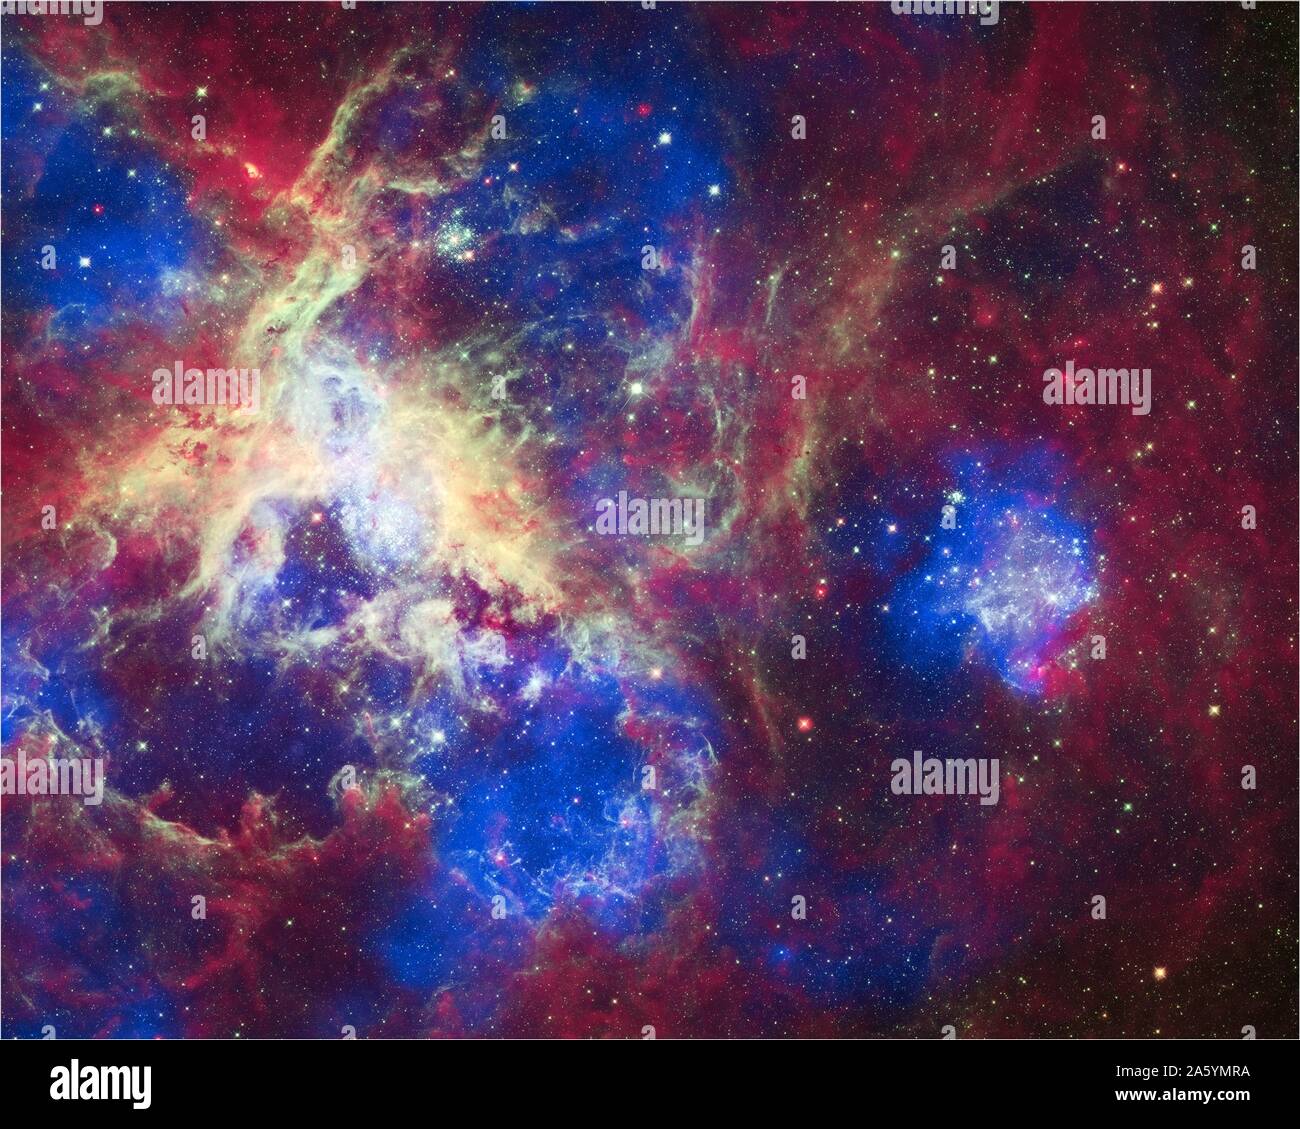 Dieser Verbund von 30 Doradus, aka der Tarantula Nebula, enthält Daten von Chandra, Hubble und Spitzer. Befindet sich in der Großen Magellanschen Wolke, die Tarantula Nebula ist einer der größten Sterne bilden Regionen in der Nähe der Milchstraße. Stockfoto